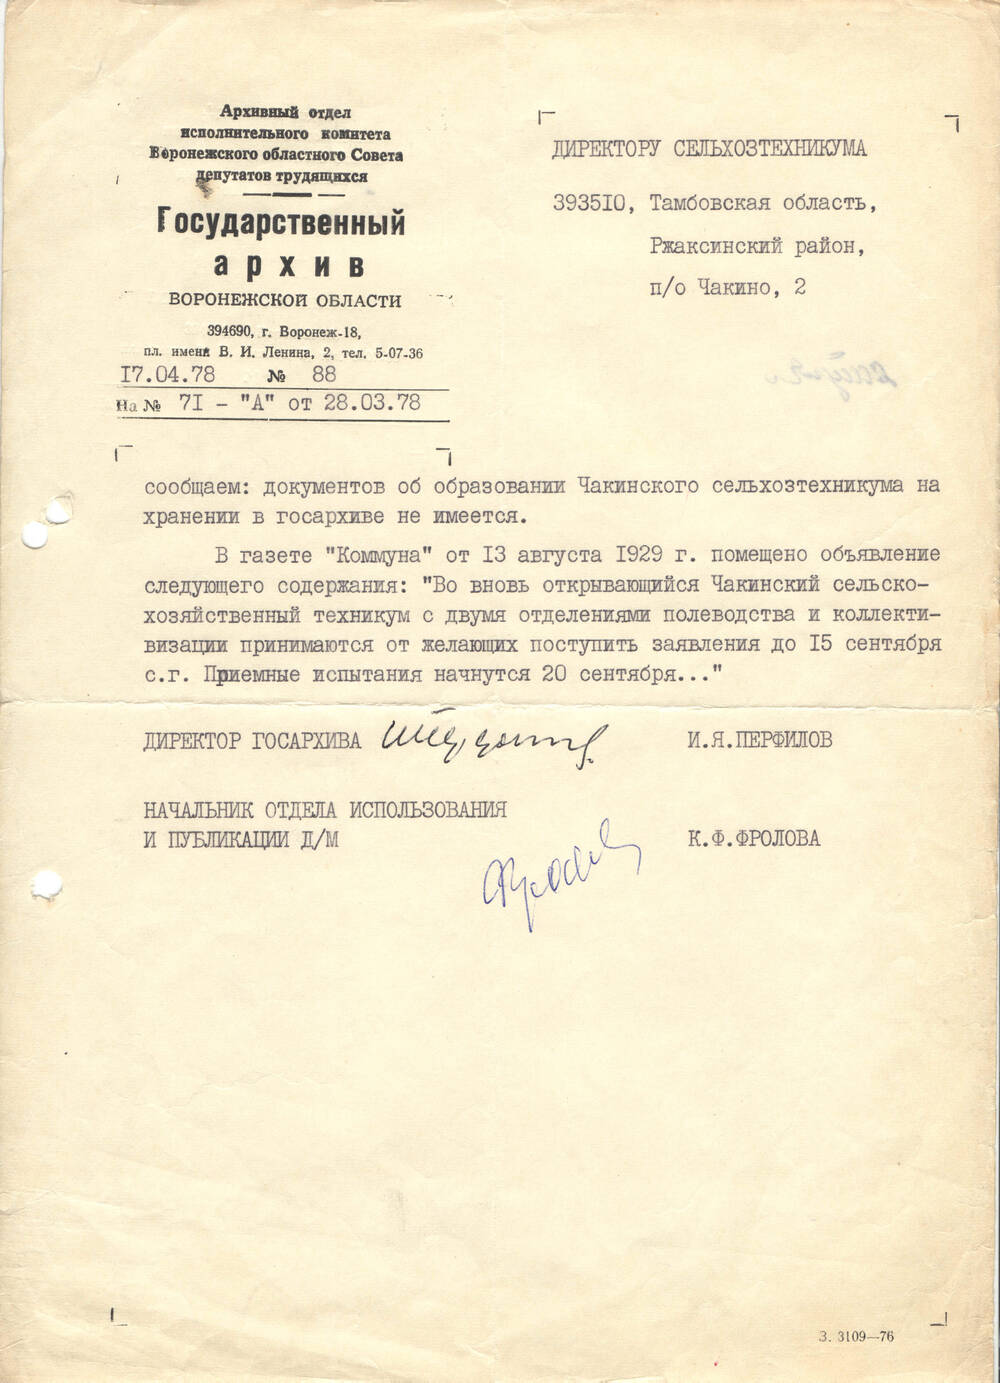 Письмо-ответ на запрос из Государственного архива Воронежской области №88 от 17.04.1978 г.